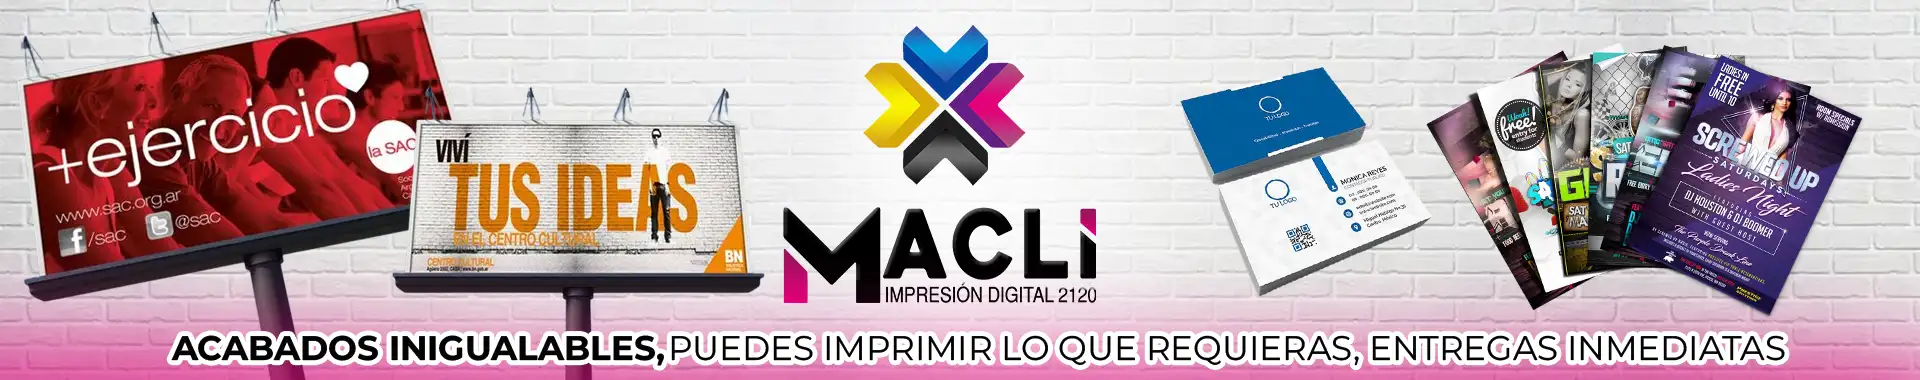 Imagen 3 del perfil de Macli Impresión Digital 2120